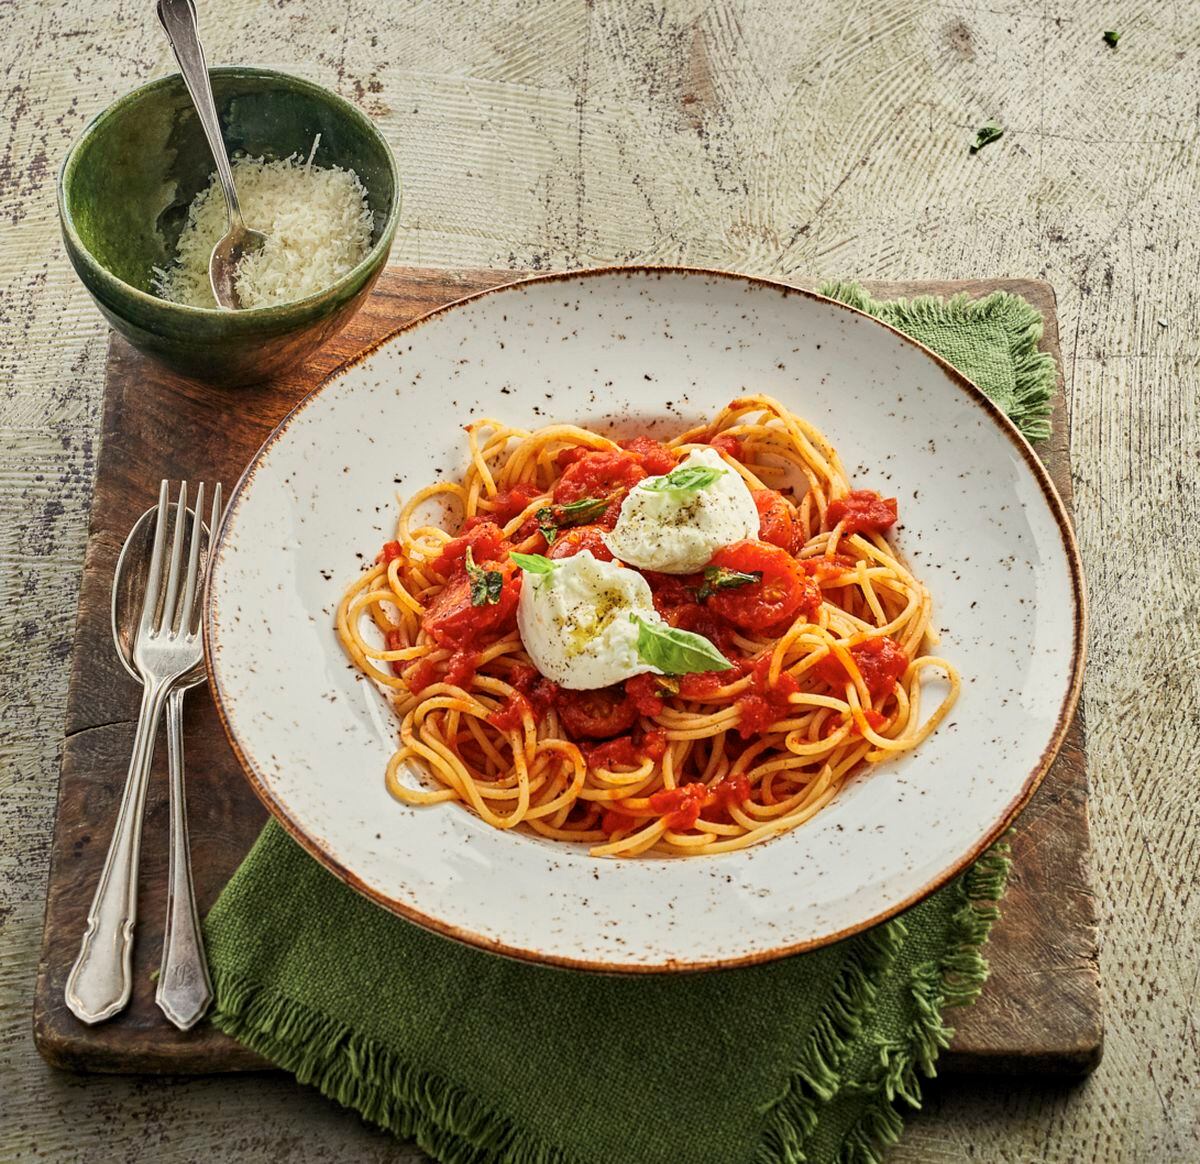 Classic simplicity – the spaghetti pomodoro